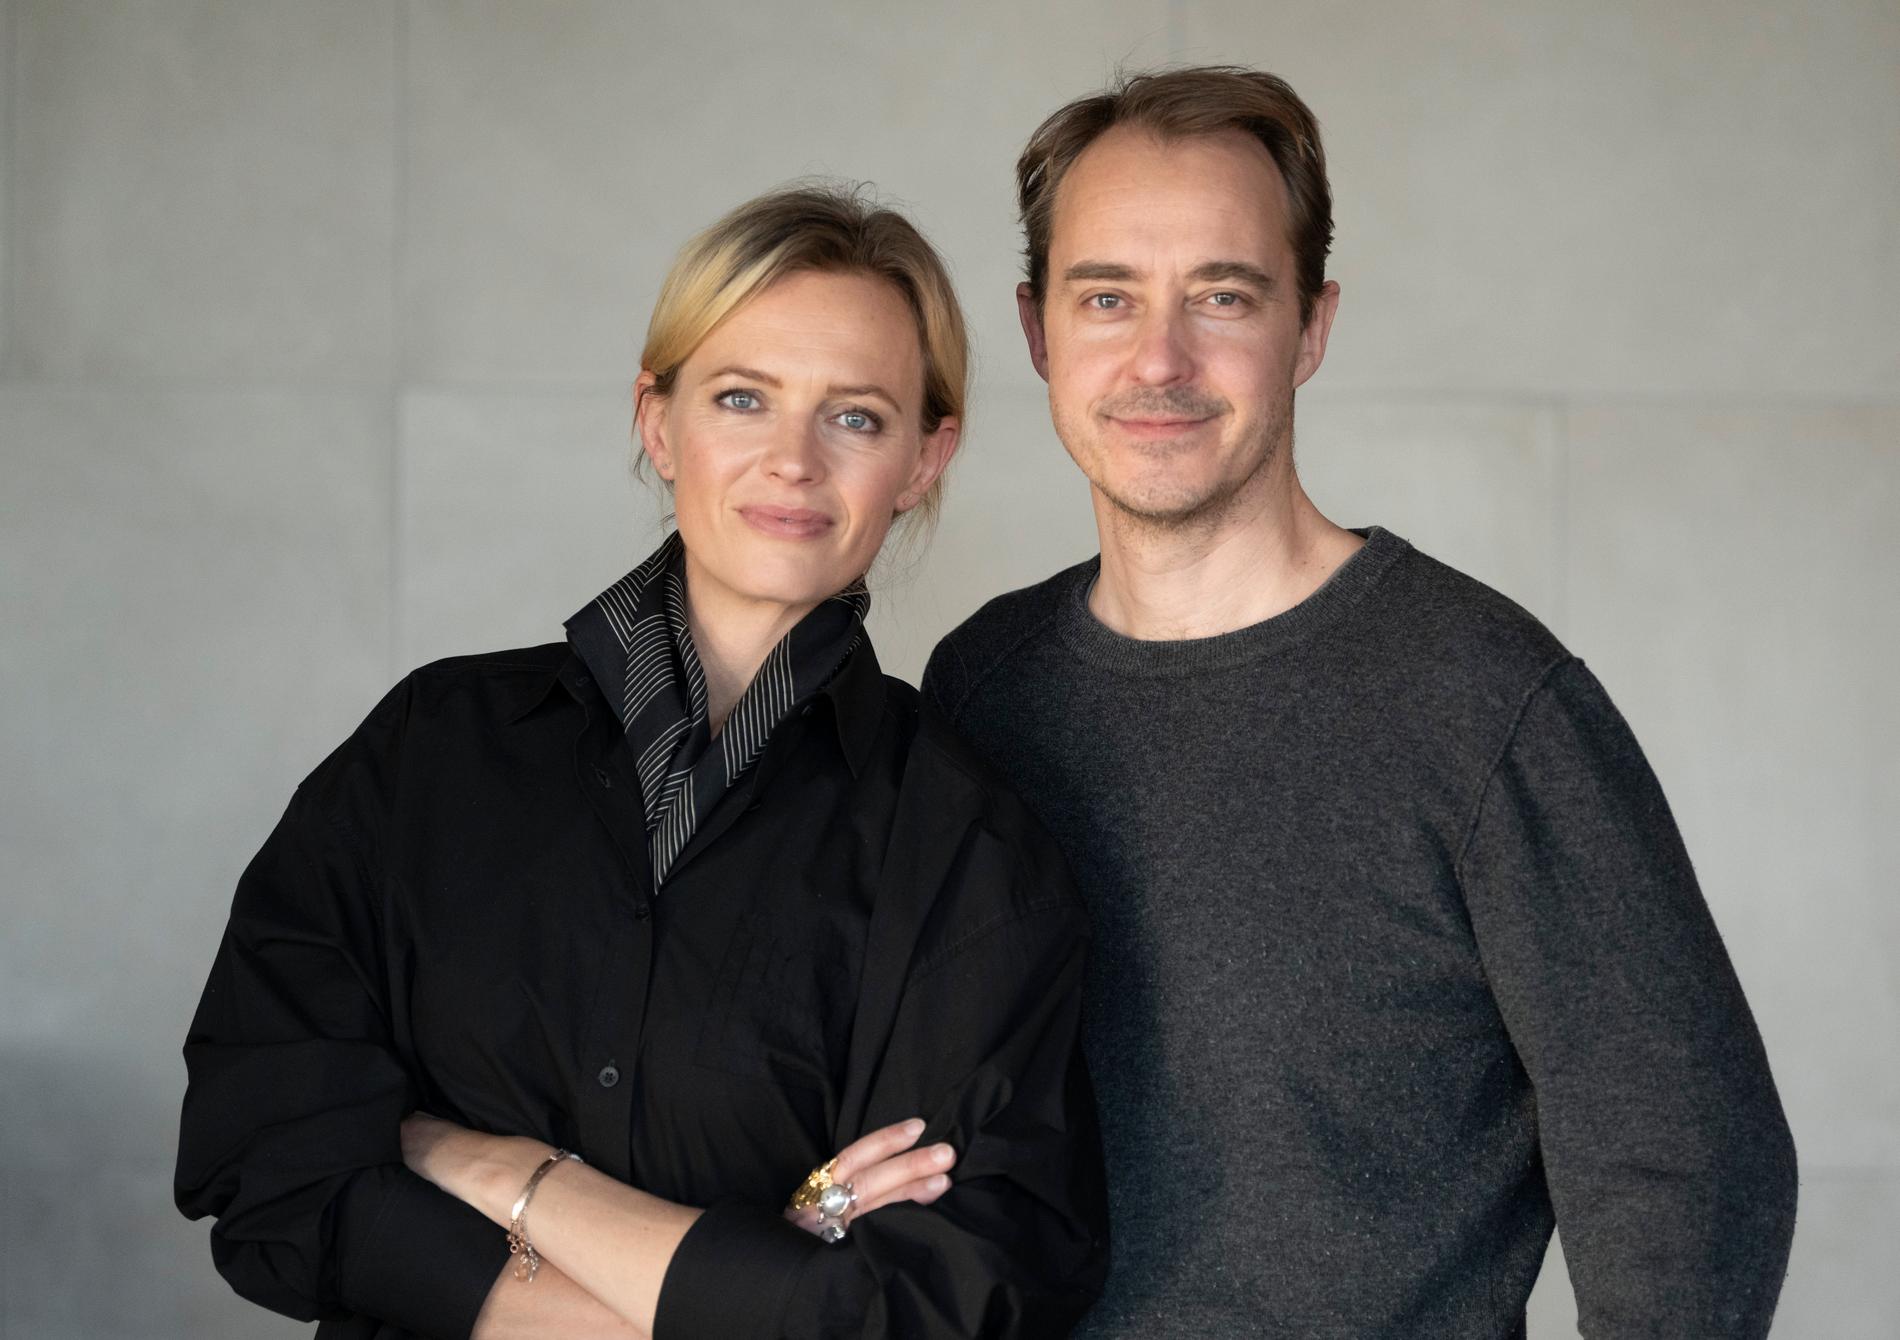 Josephine Bornebusch och Jonas Karlsson har skapat och spelar huvudrollerna i kommande tv-serien "Harmonica”.